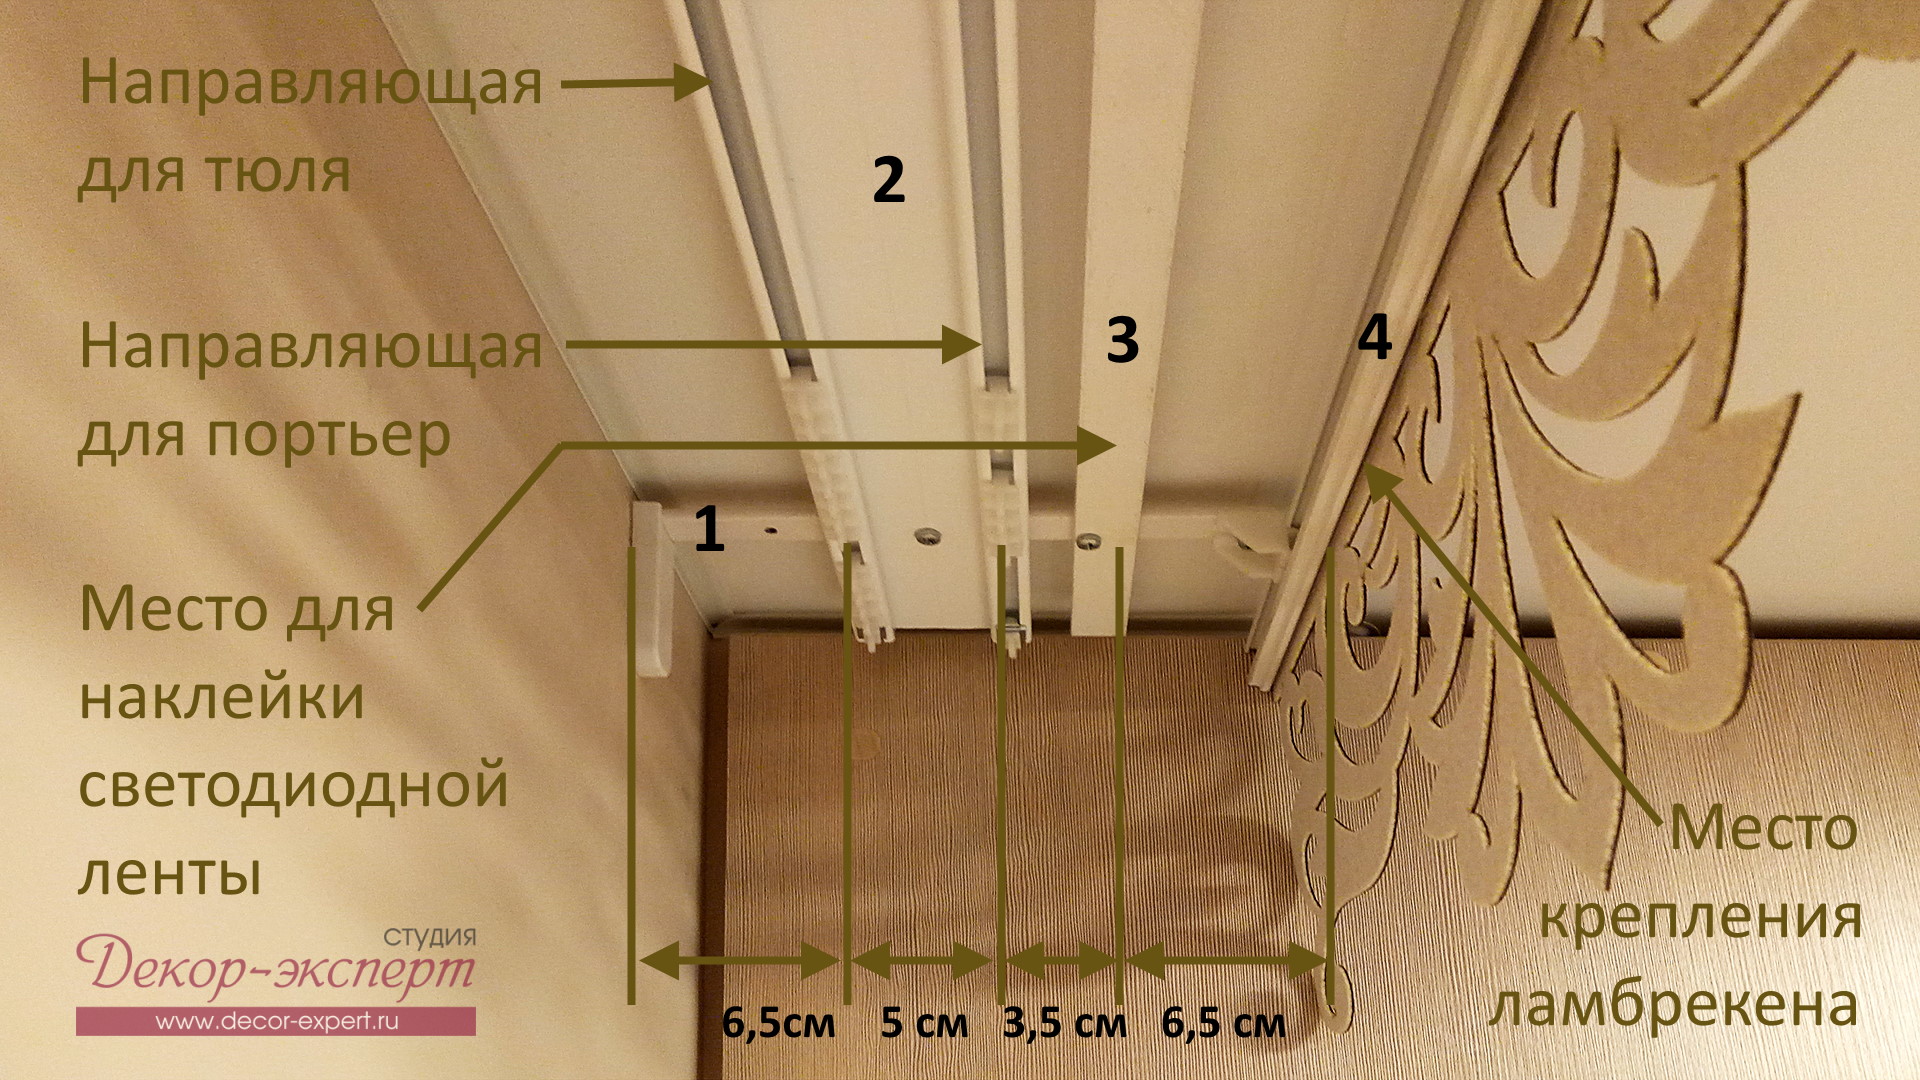 Схема расположения карнизов для штор со светодиодной подсветкой. Вариант стенового крепления.  Желательно расстояние от портьер до места наклейки светодиодной ленты увеличить минимум до пяти сантиметров!